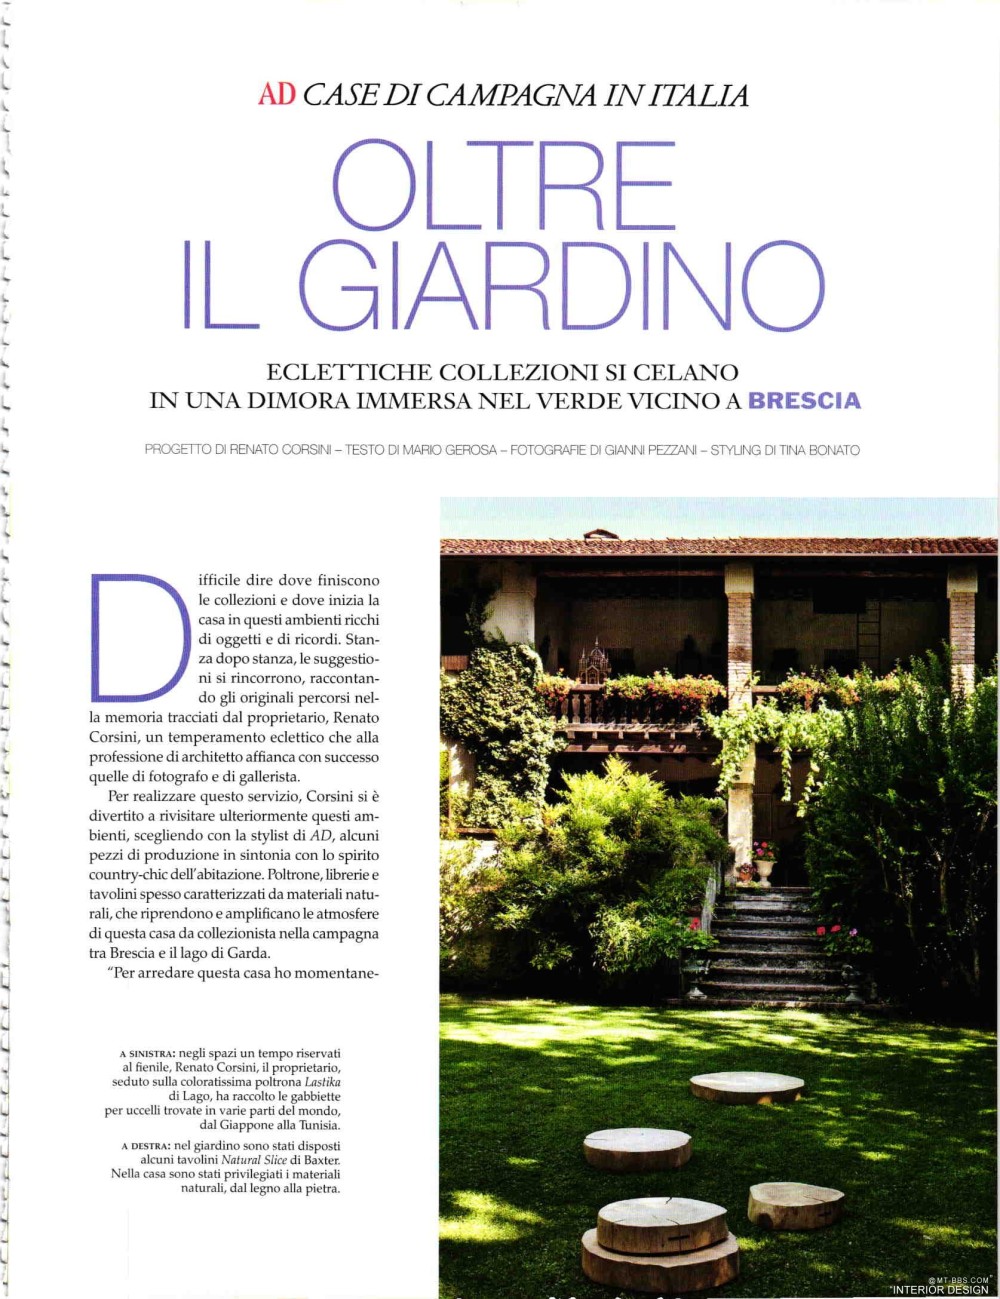 意大利AD 杂志 2012年全年JPG高清版本 全免（上传完毕）_0199.jpg